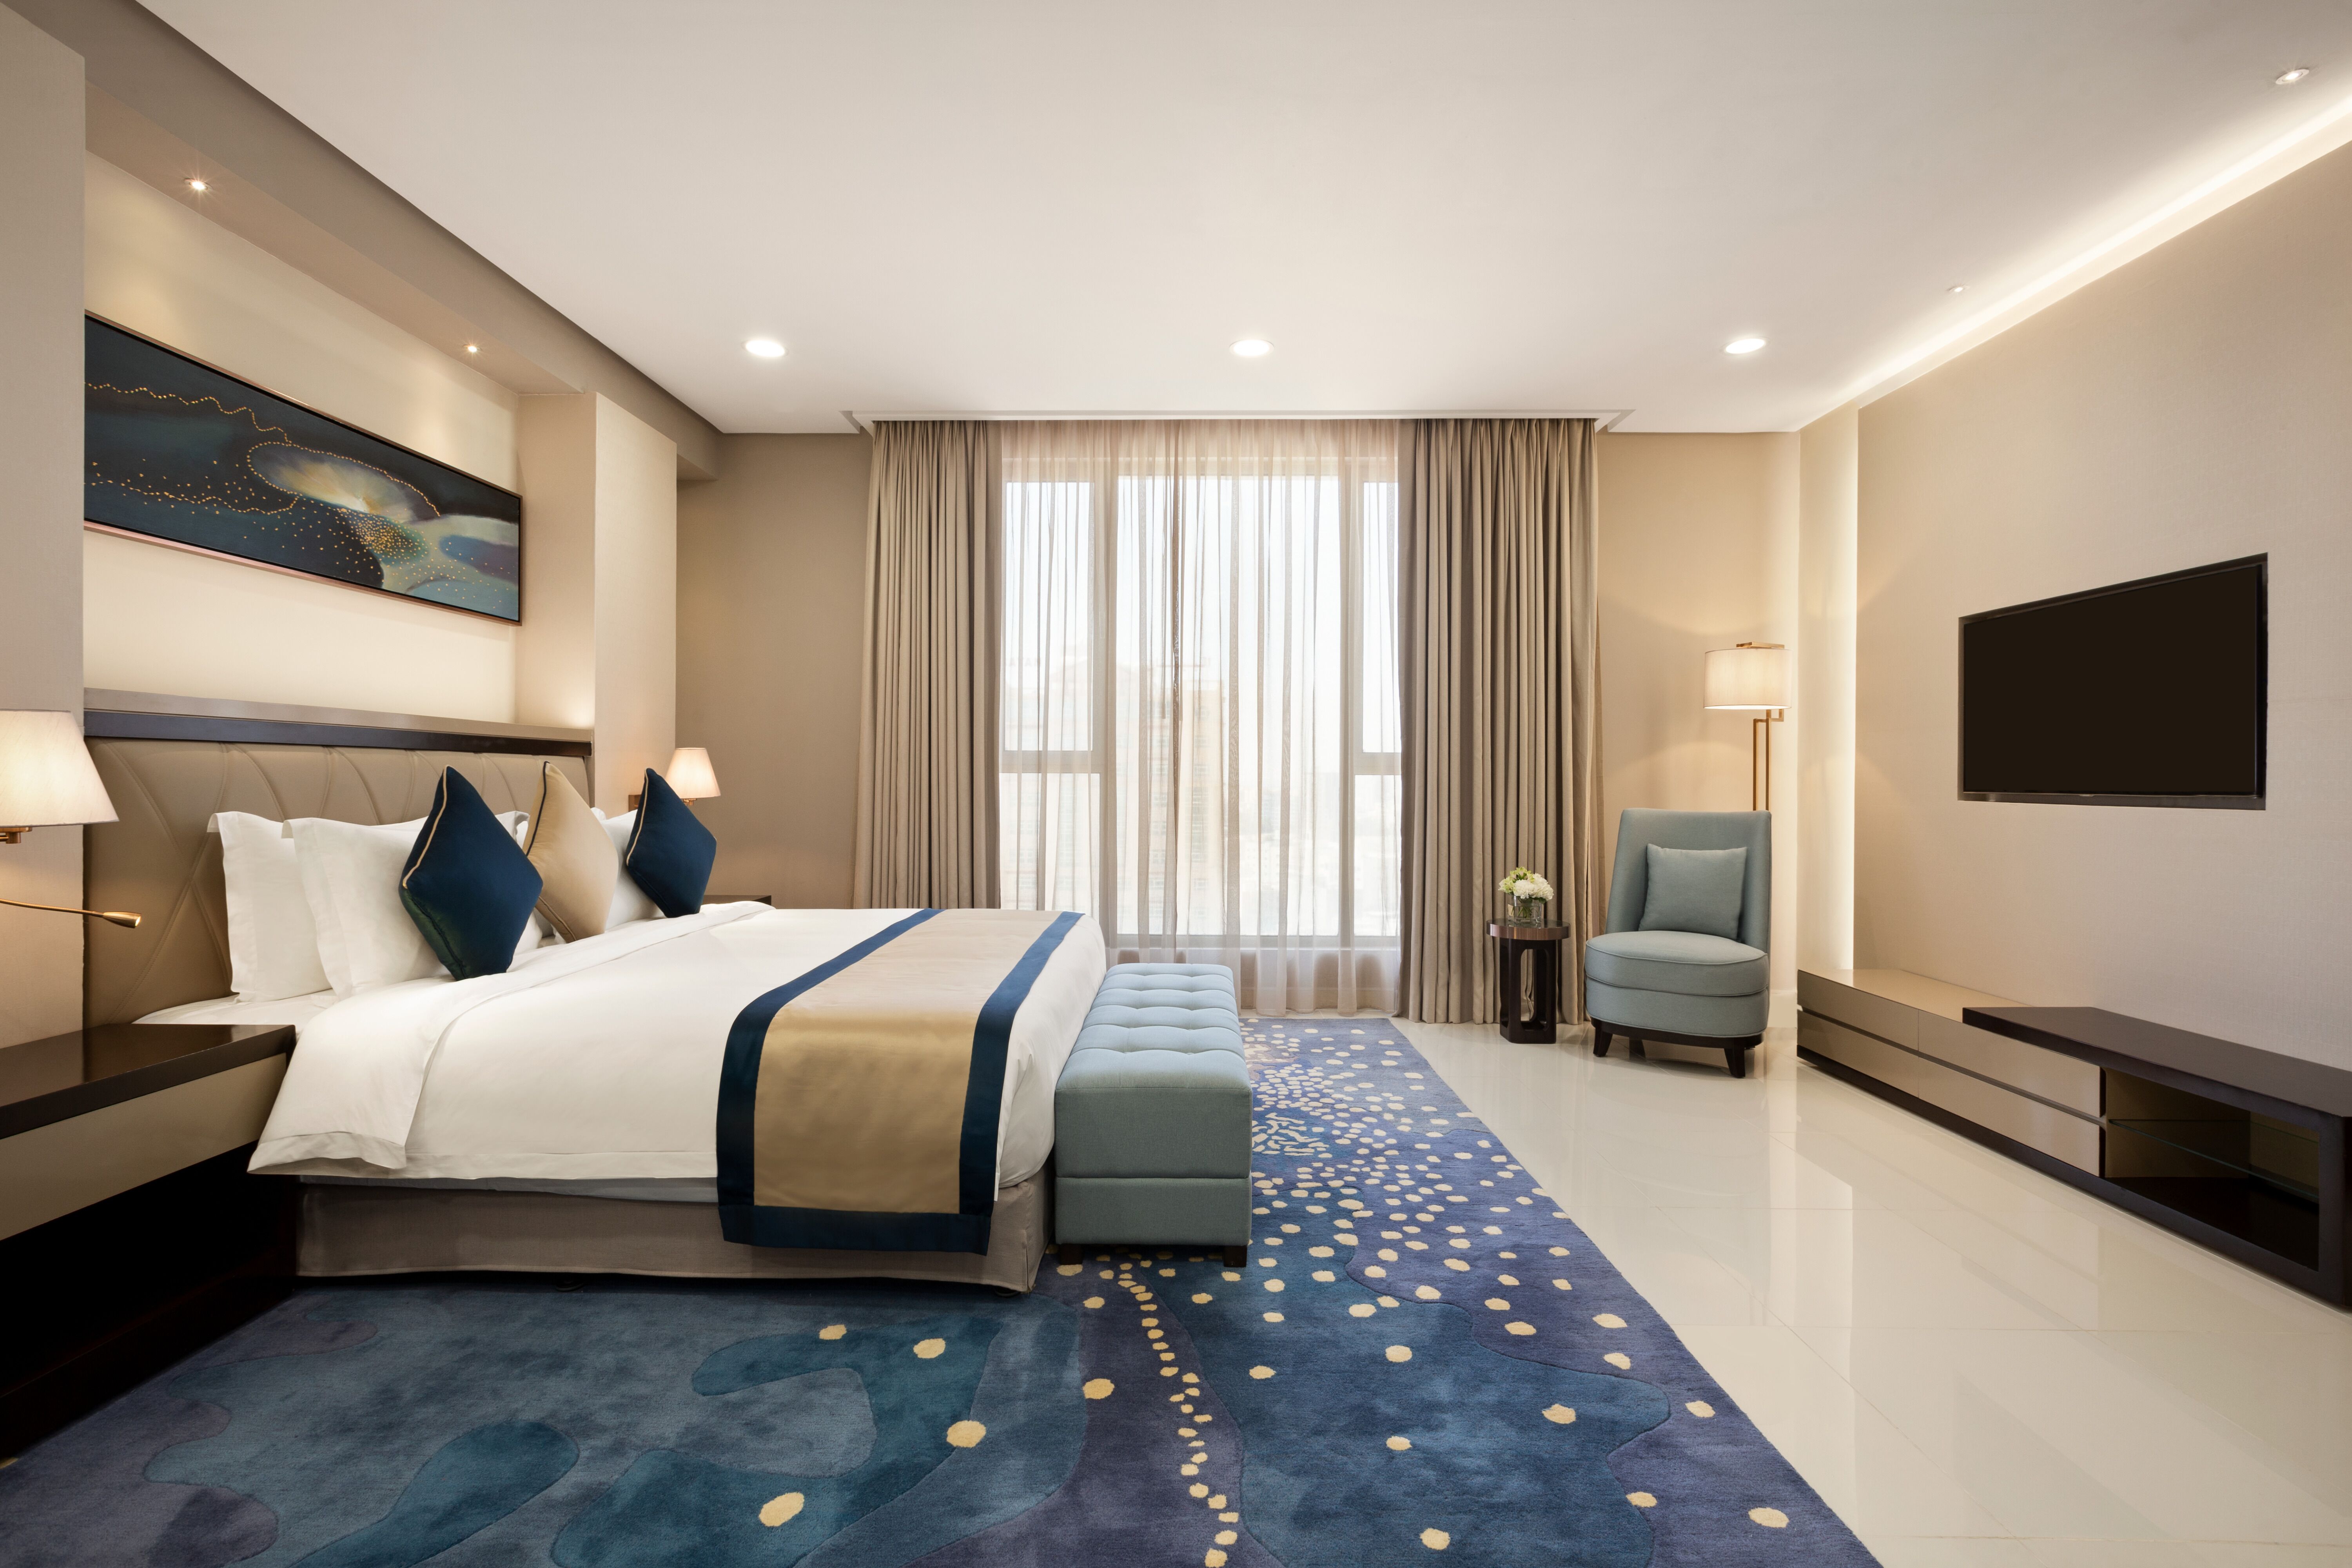 Hotel Rooms in Bahrain | Best Hotels in Manama | Wyndham Garden